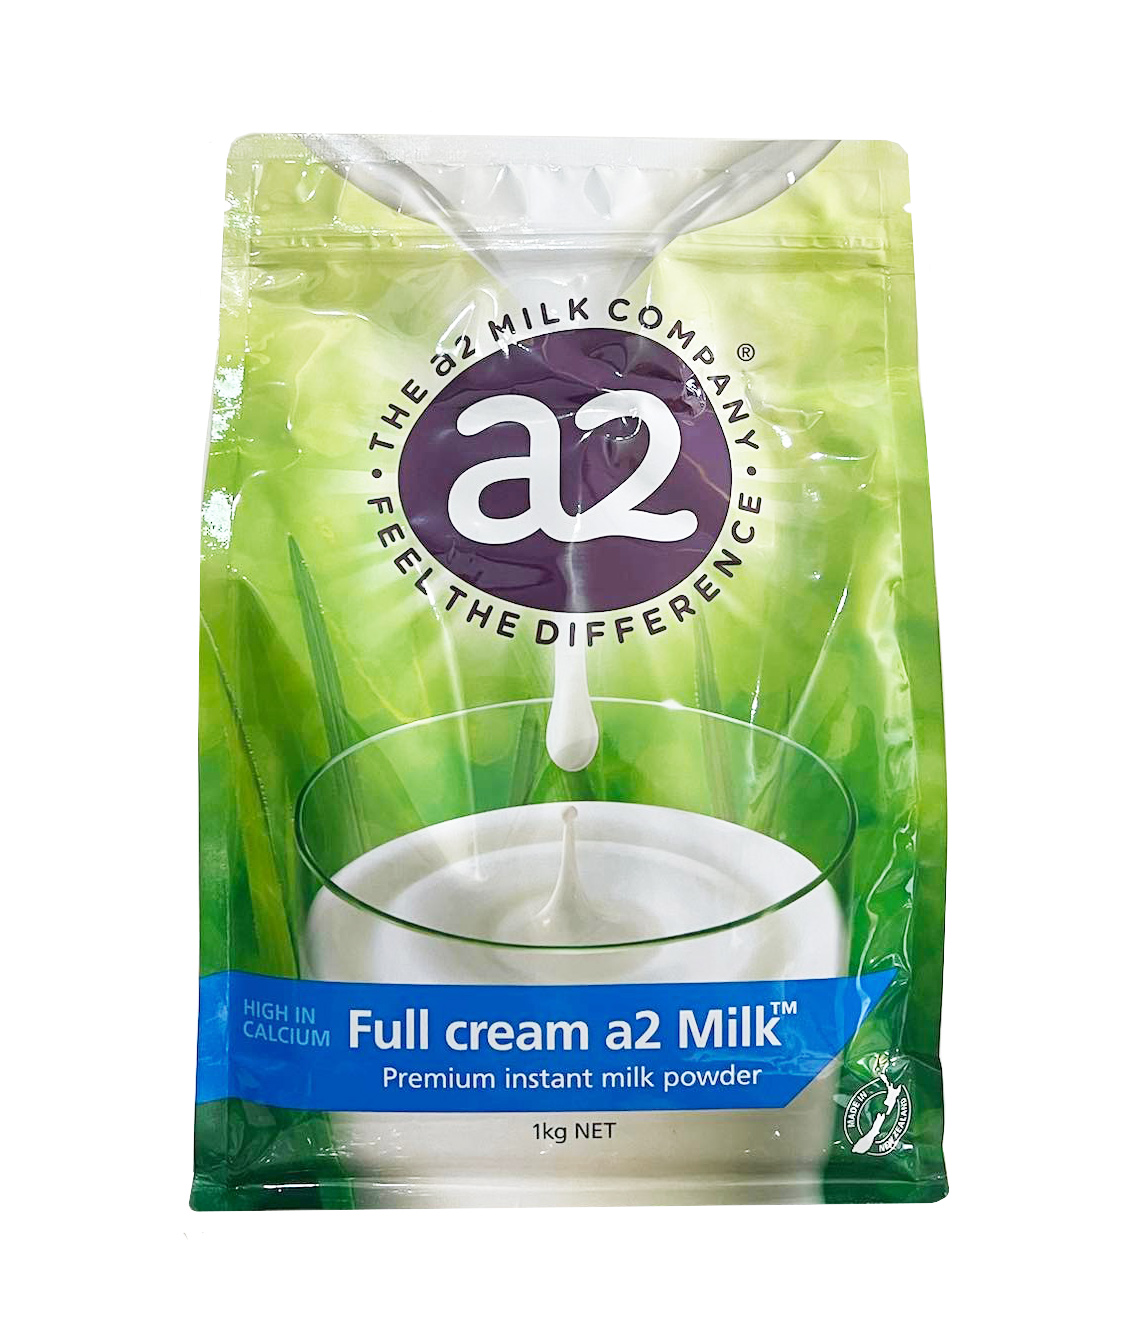 Sữa tươi A2  Úc là loại sữa được nhiều người tin dùng vì chất lượng và giá trị dinh dưỡng cao. Được sản xuất với quy trình tuyệt đối an toàn và đảm bảo các thành phần sữa tươi nguyên chất, hãy cùng khám phá hình ảnh được liên kết với từ khóa này để tìm hiểu thêm về sản phẩm sữa tươi Úc của A2, một thương hiệu uy tín và phổ biến tại Việt Nam.